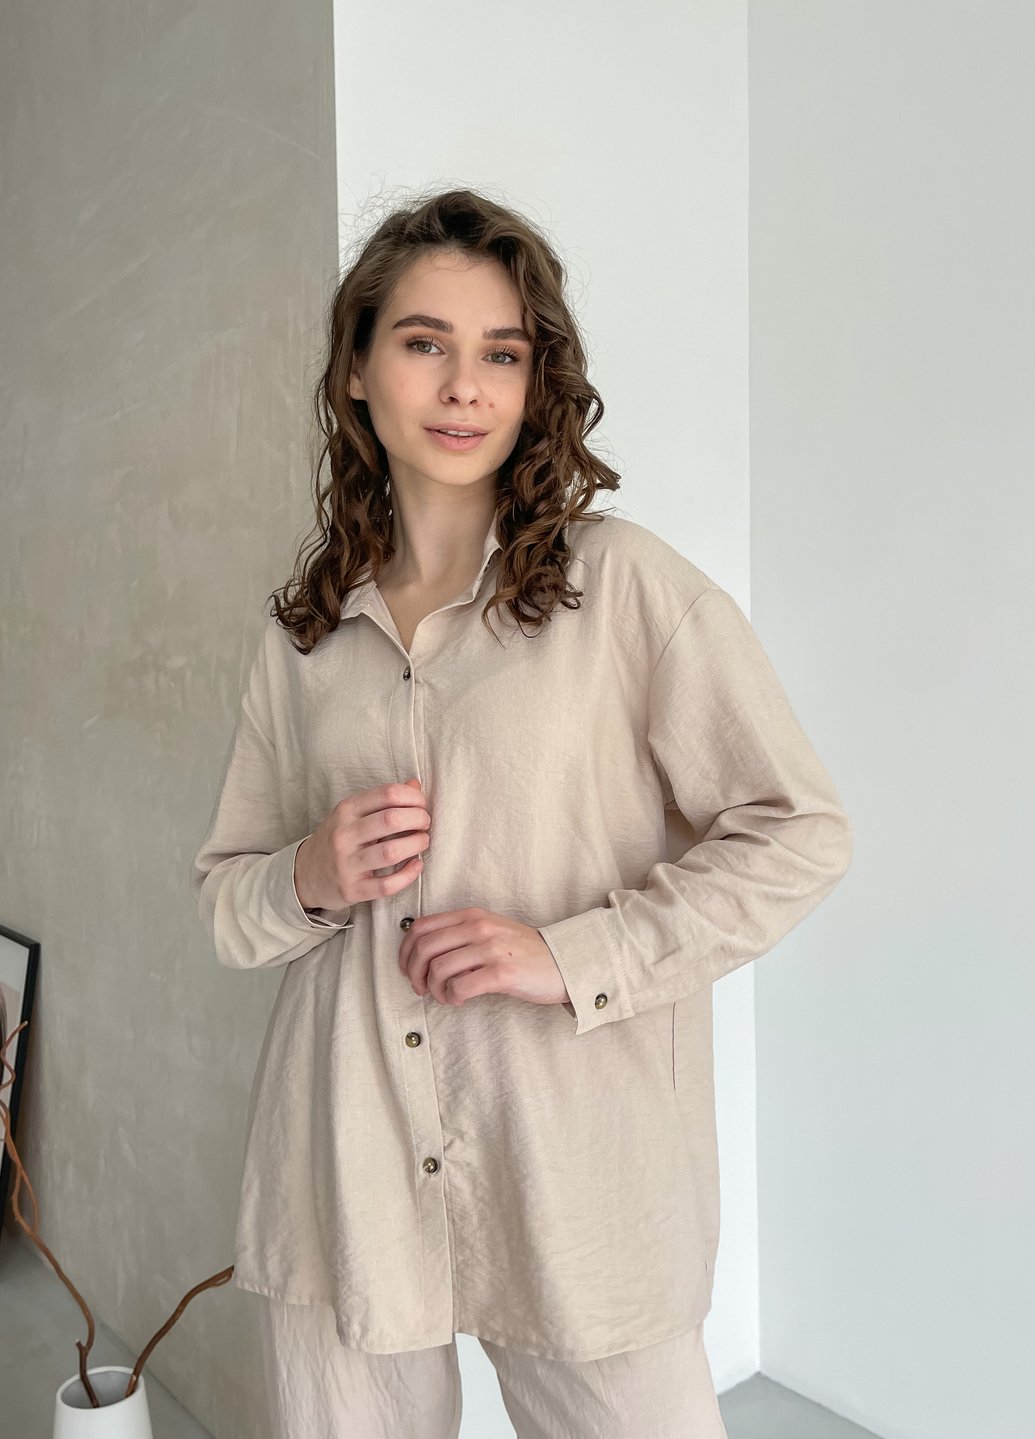 Купить Рубашка женская с длинным рукавом бежевого цвета из льна Merlini Беллуно 200000243, размер 42-44 в интернет-магазине